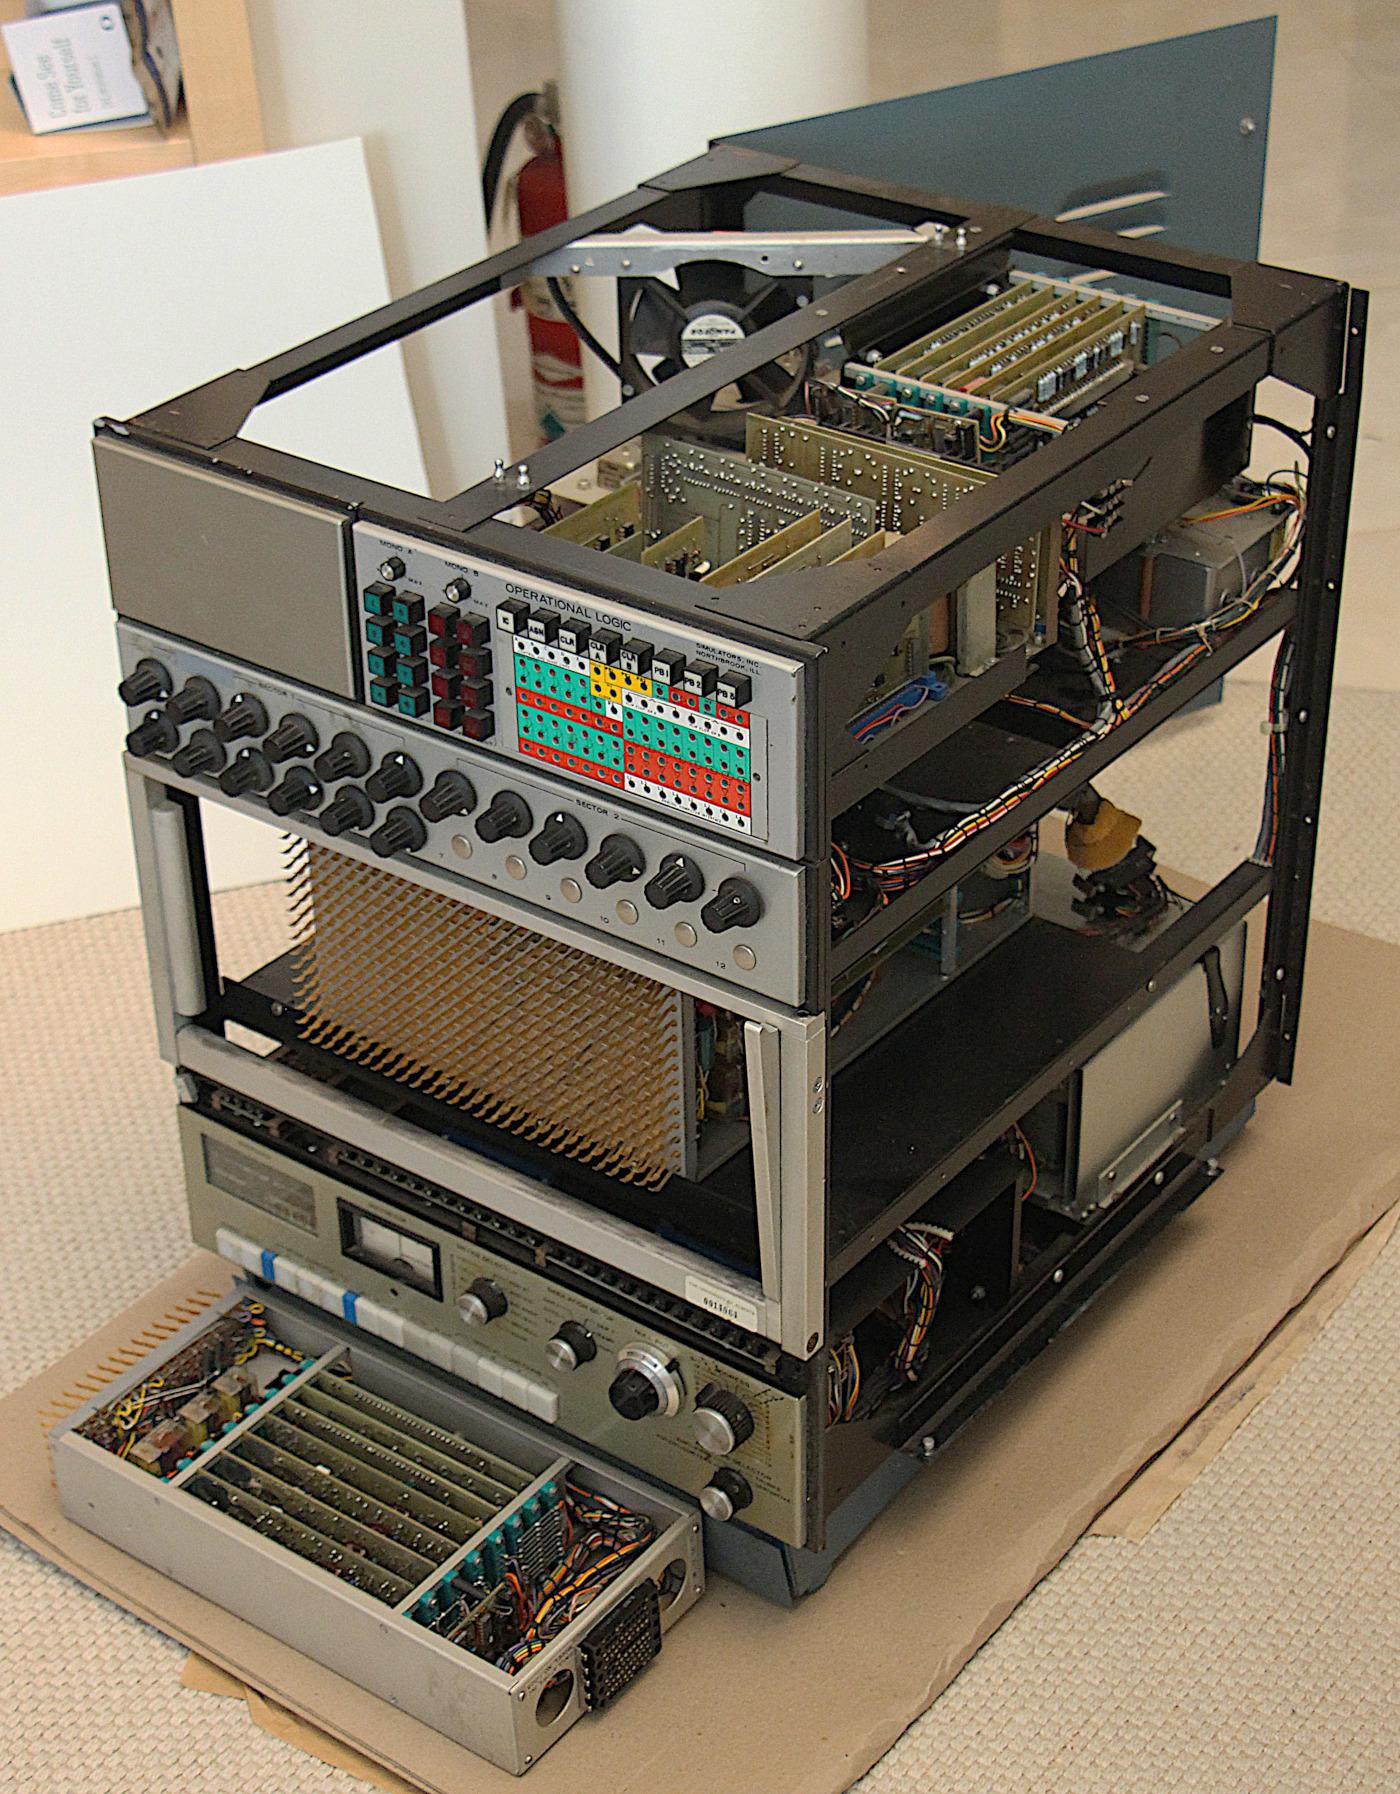 Реверс-инжиниринг малошумящих операционных усилителей из аналогового компьютера 1969 года - 5